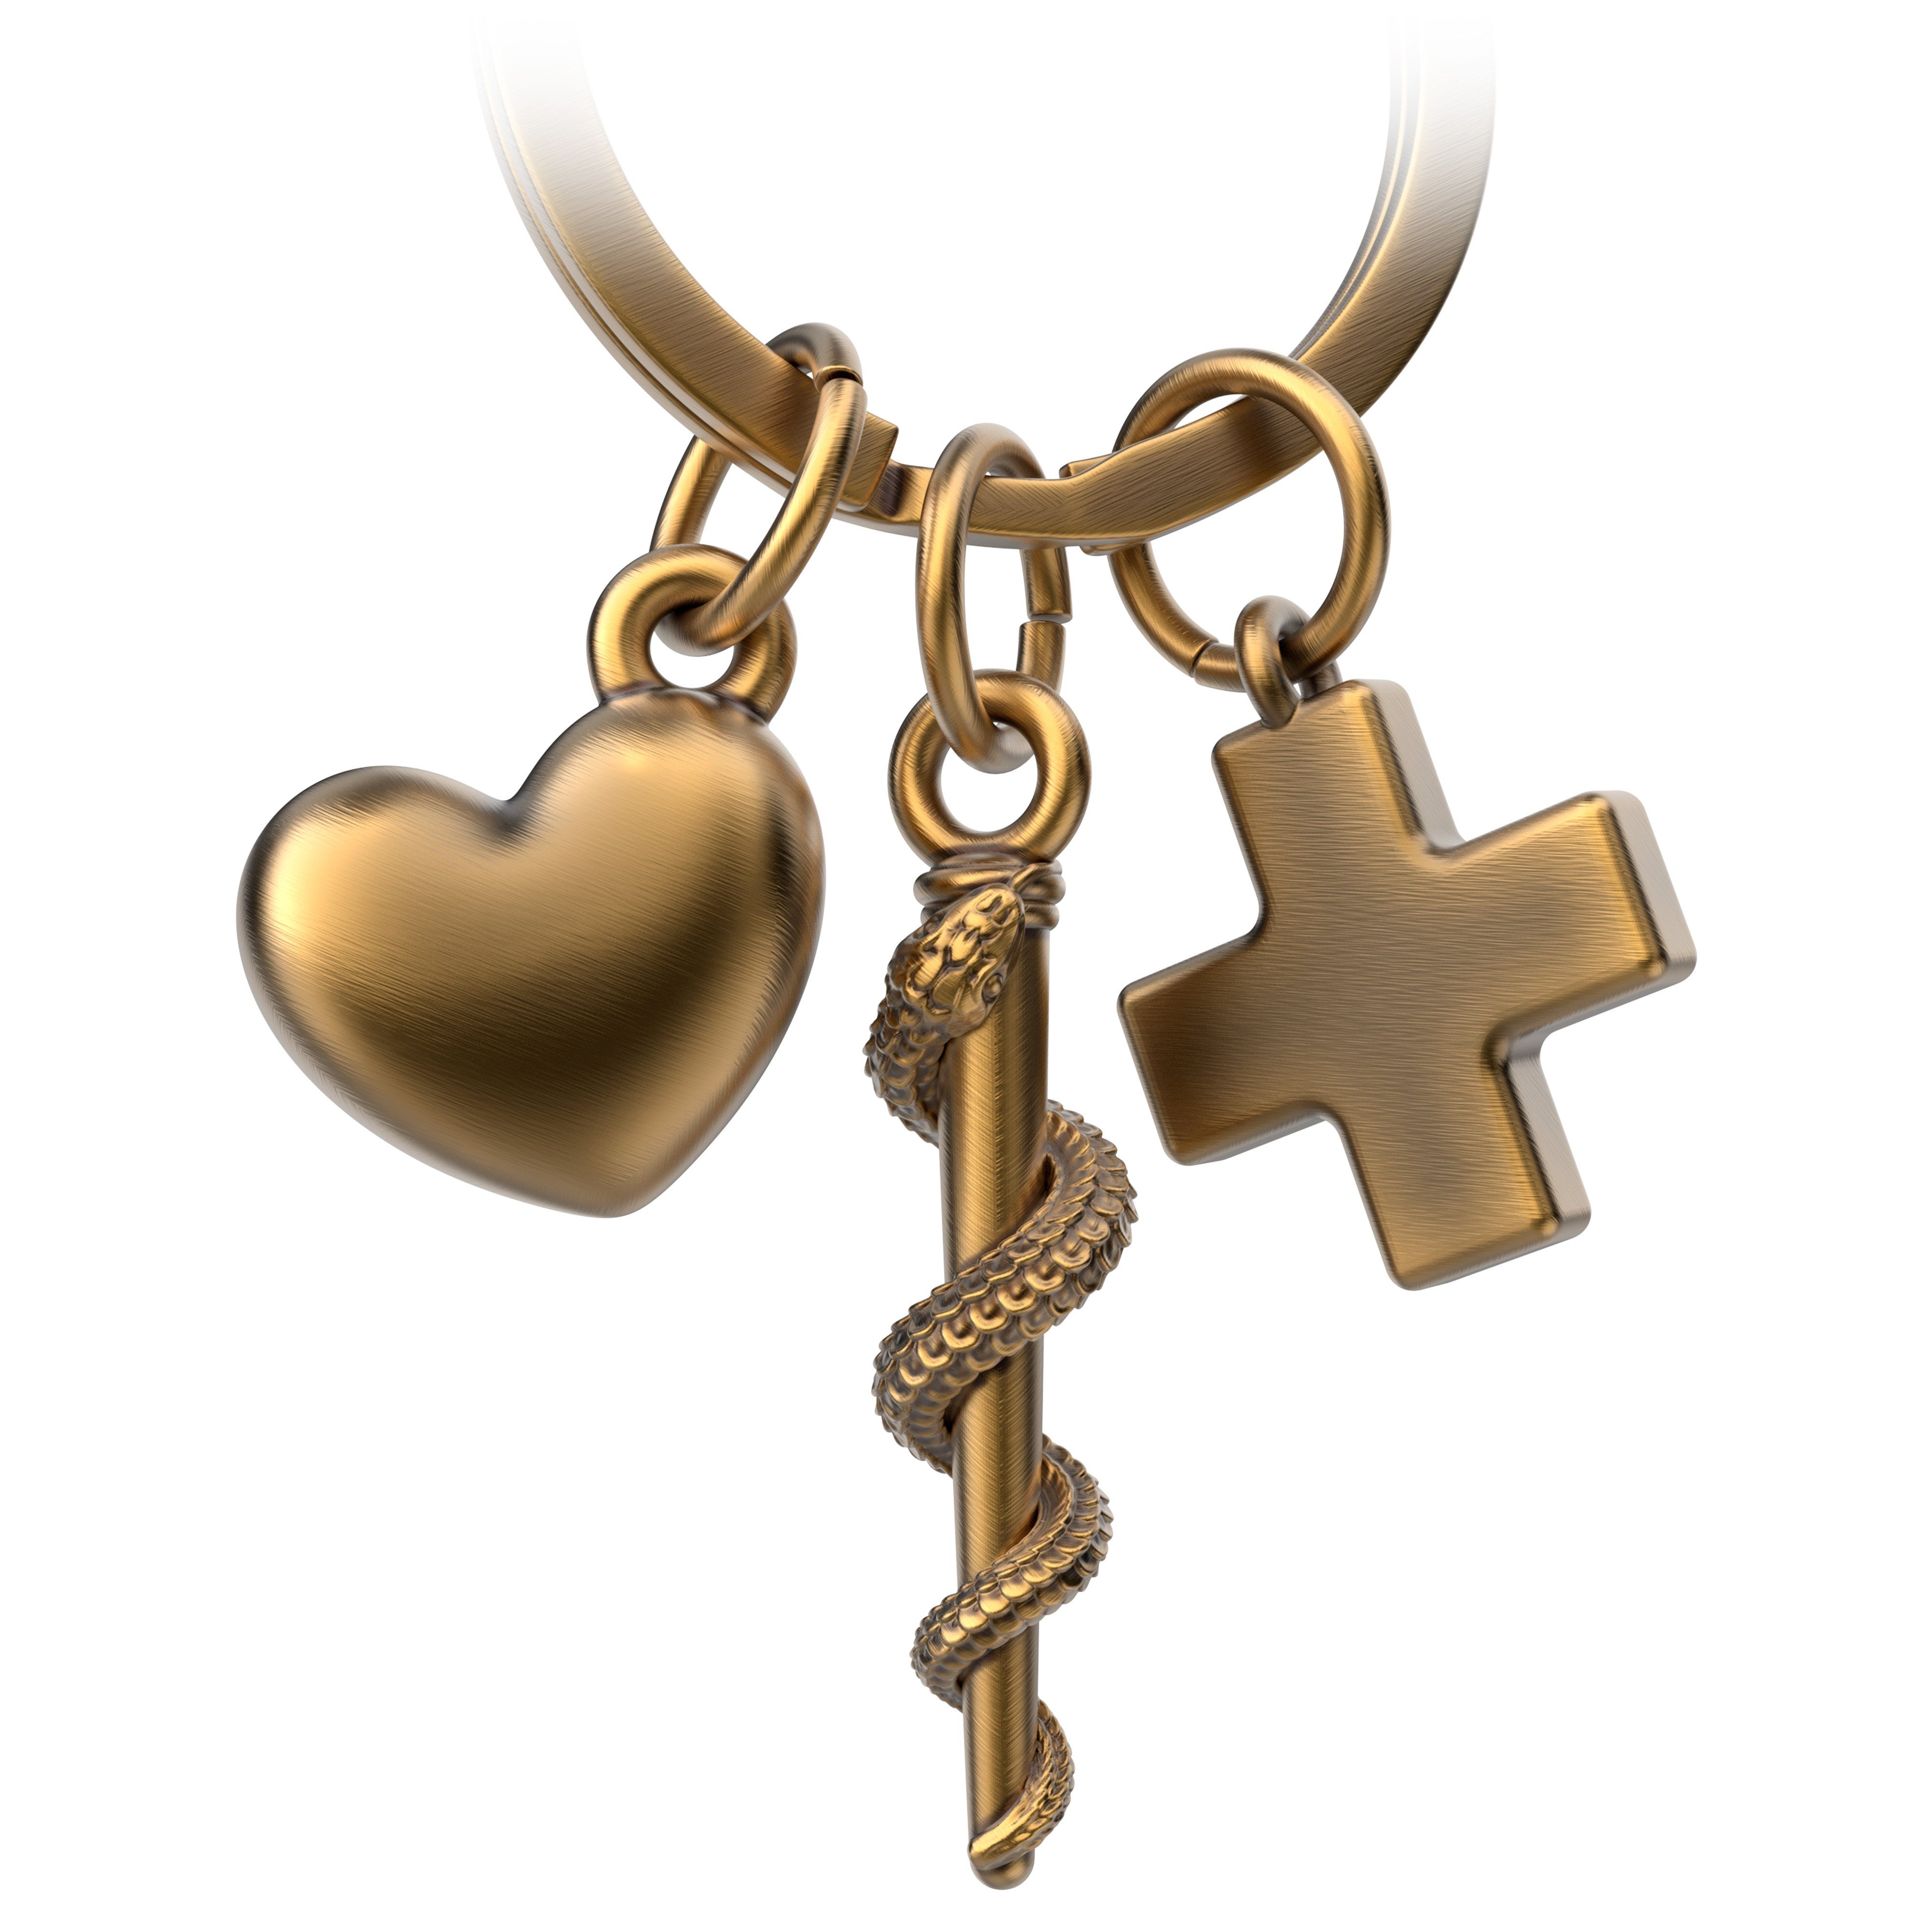 FABACH Schlüsselanhänger und Asklepios Schlüsselanhänger mit Antique Äskulapstab Herz Bronze Kreuz